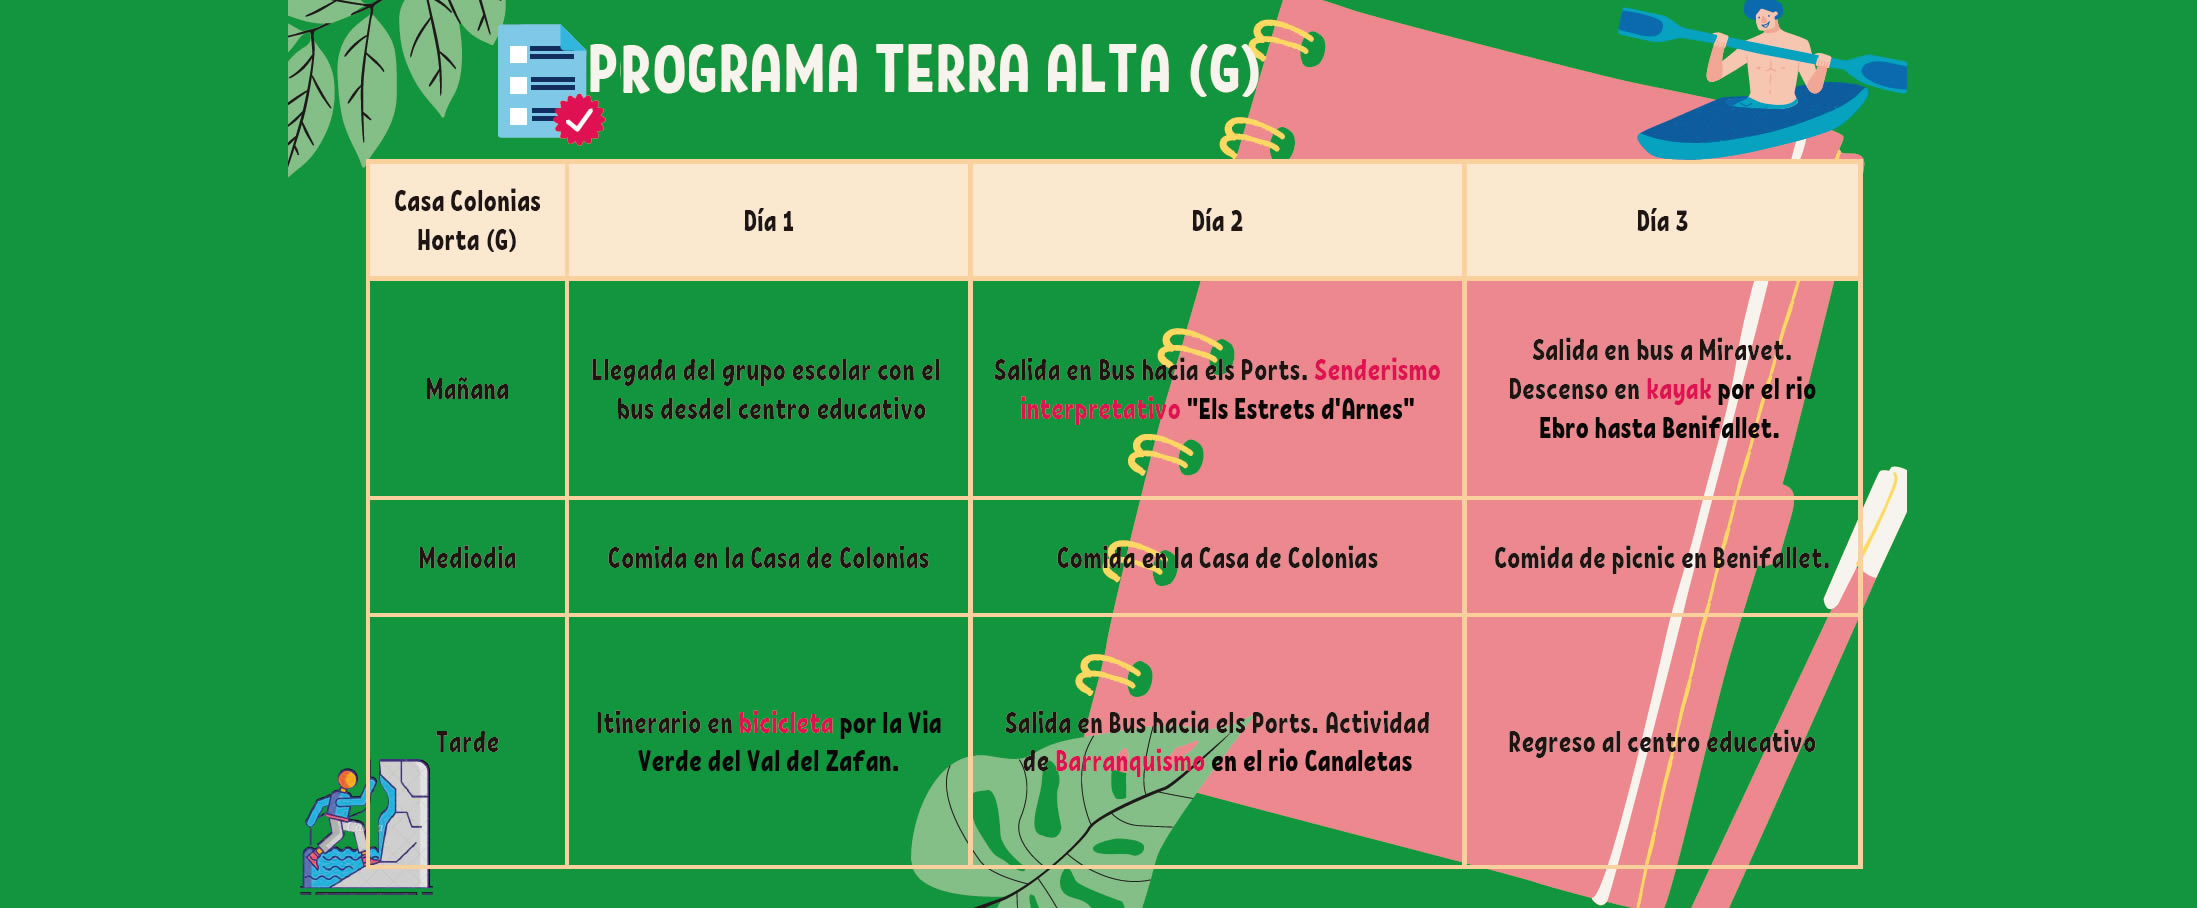 Programa escolar Terra Alta – Casa Colonias Horta (G)